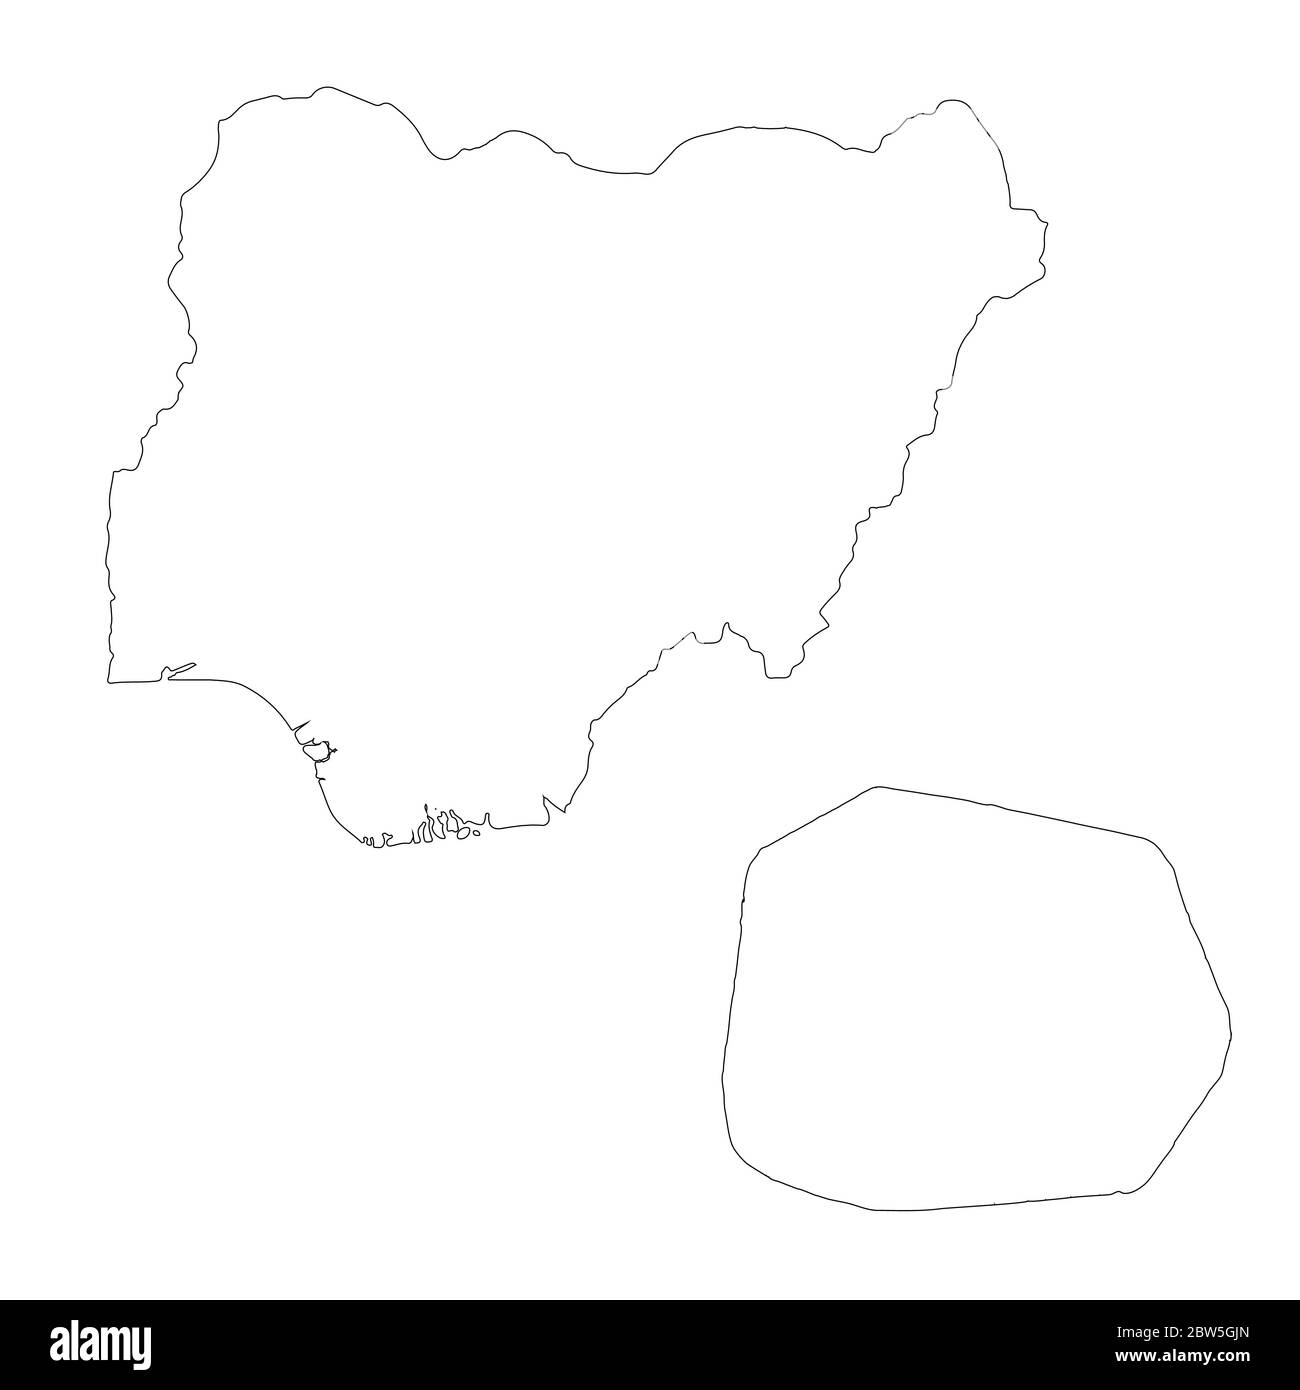 Vektorkarte Nigeria und Abuja. Land und Hauptstadt. Isolierte Vektorgrafik. Übersicht. EPS 10-Abbildung. Stock Vektor